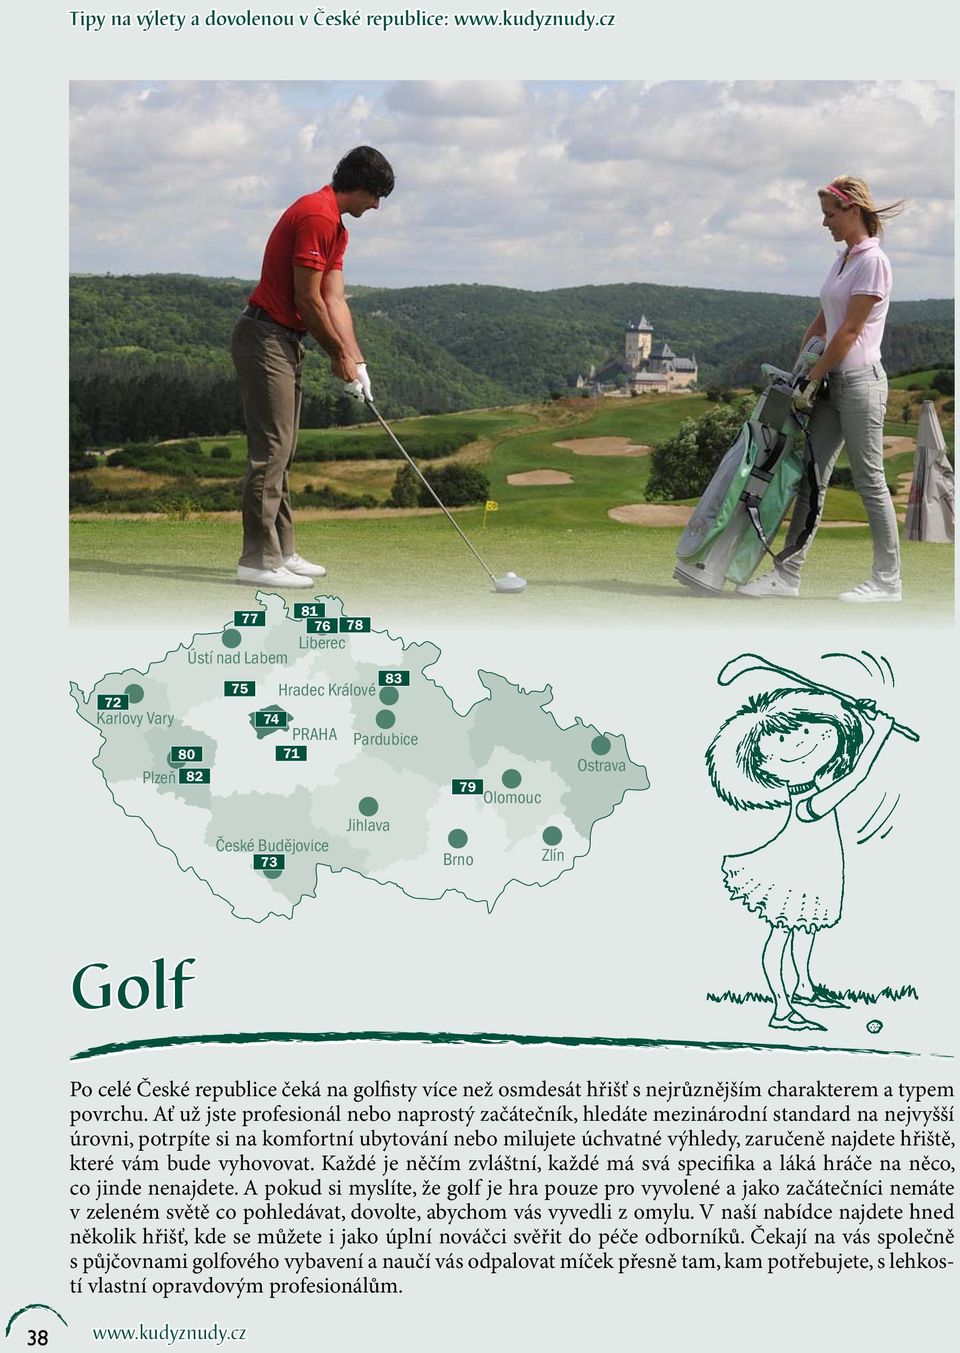 na golfisty více než osmdesát hřišť s nejrůznějším charakterem a typem povrchu.